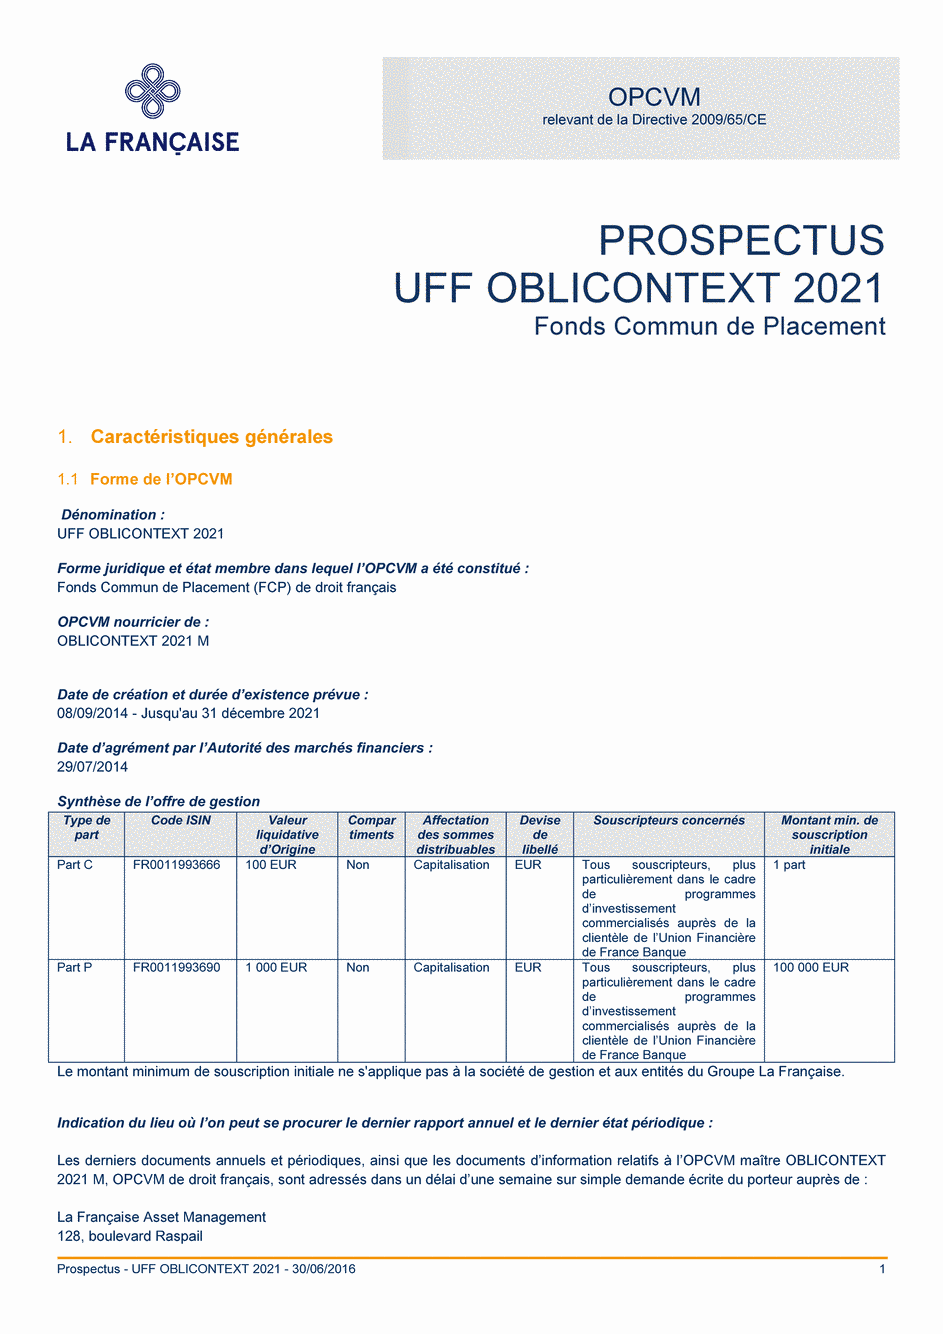 Prospectus UFF OBLICONTEXT 2021 - Part P - 30/06/2016 - Français